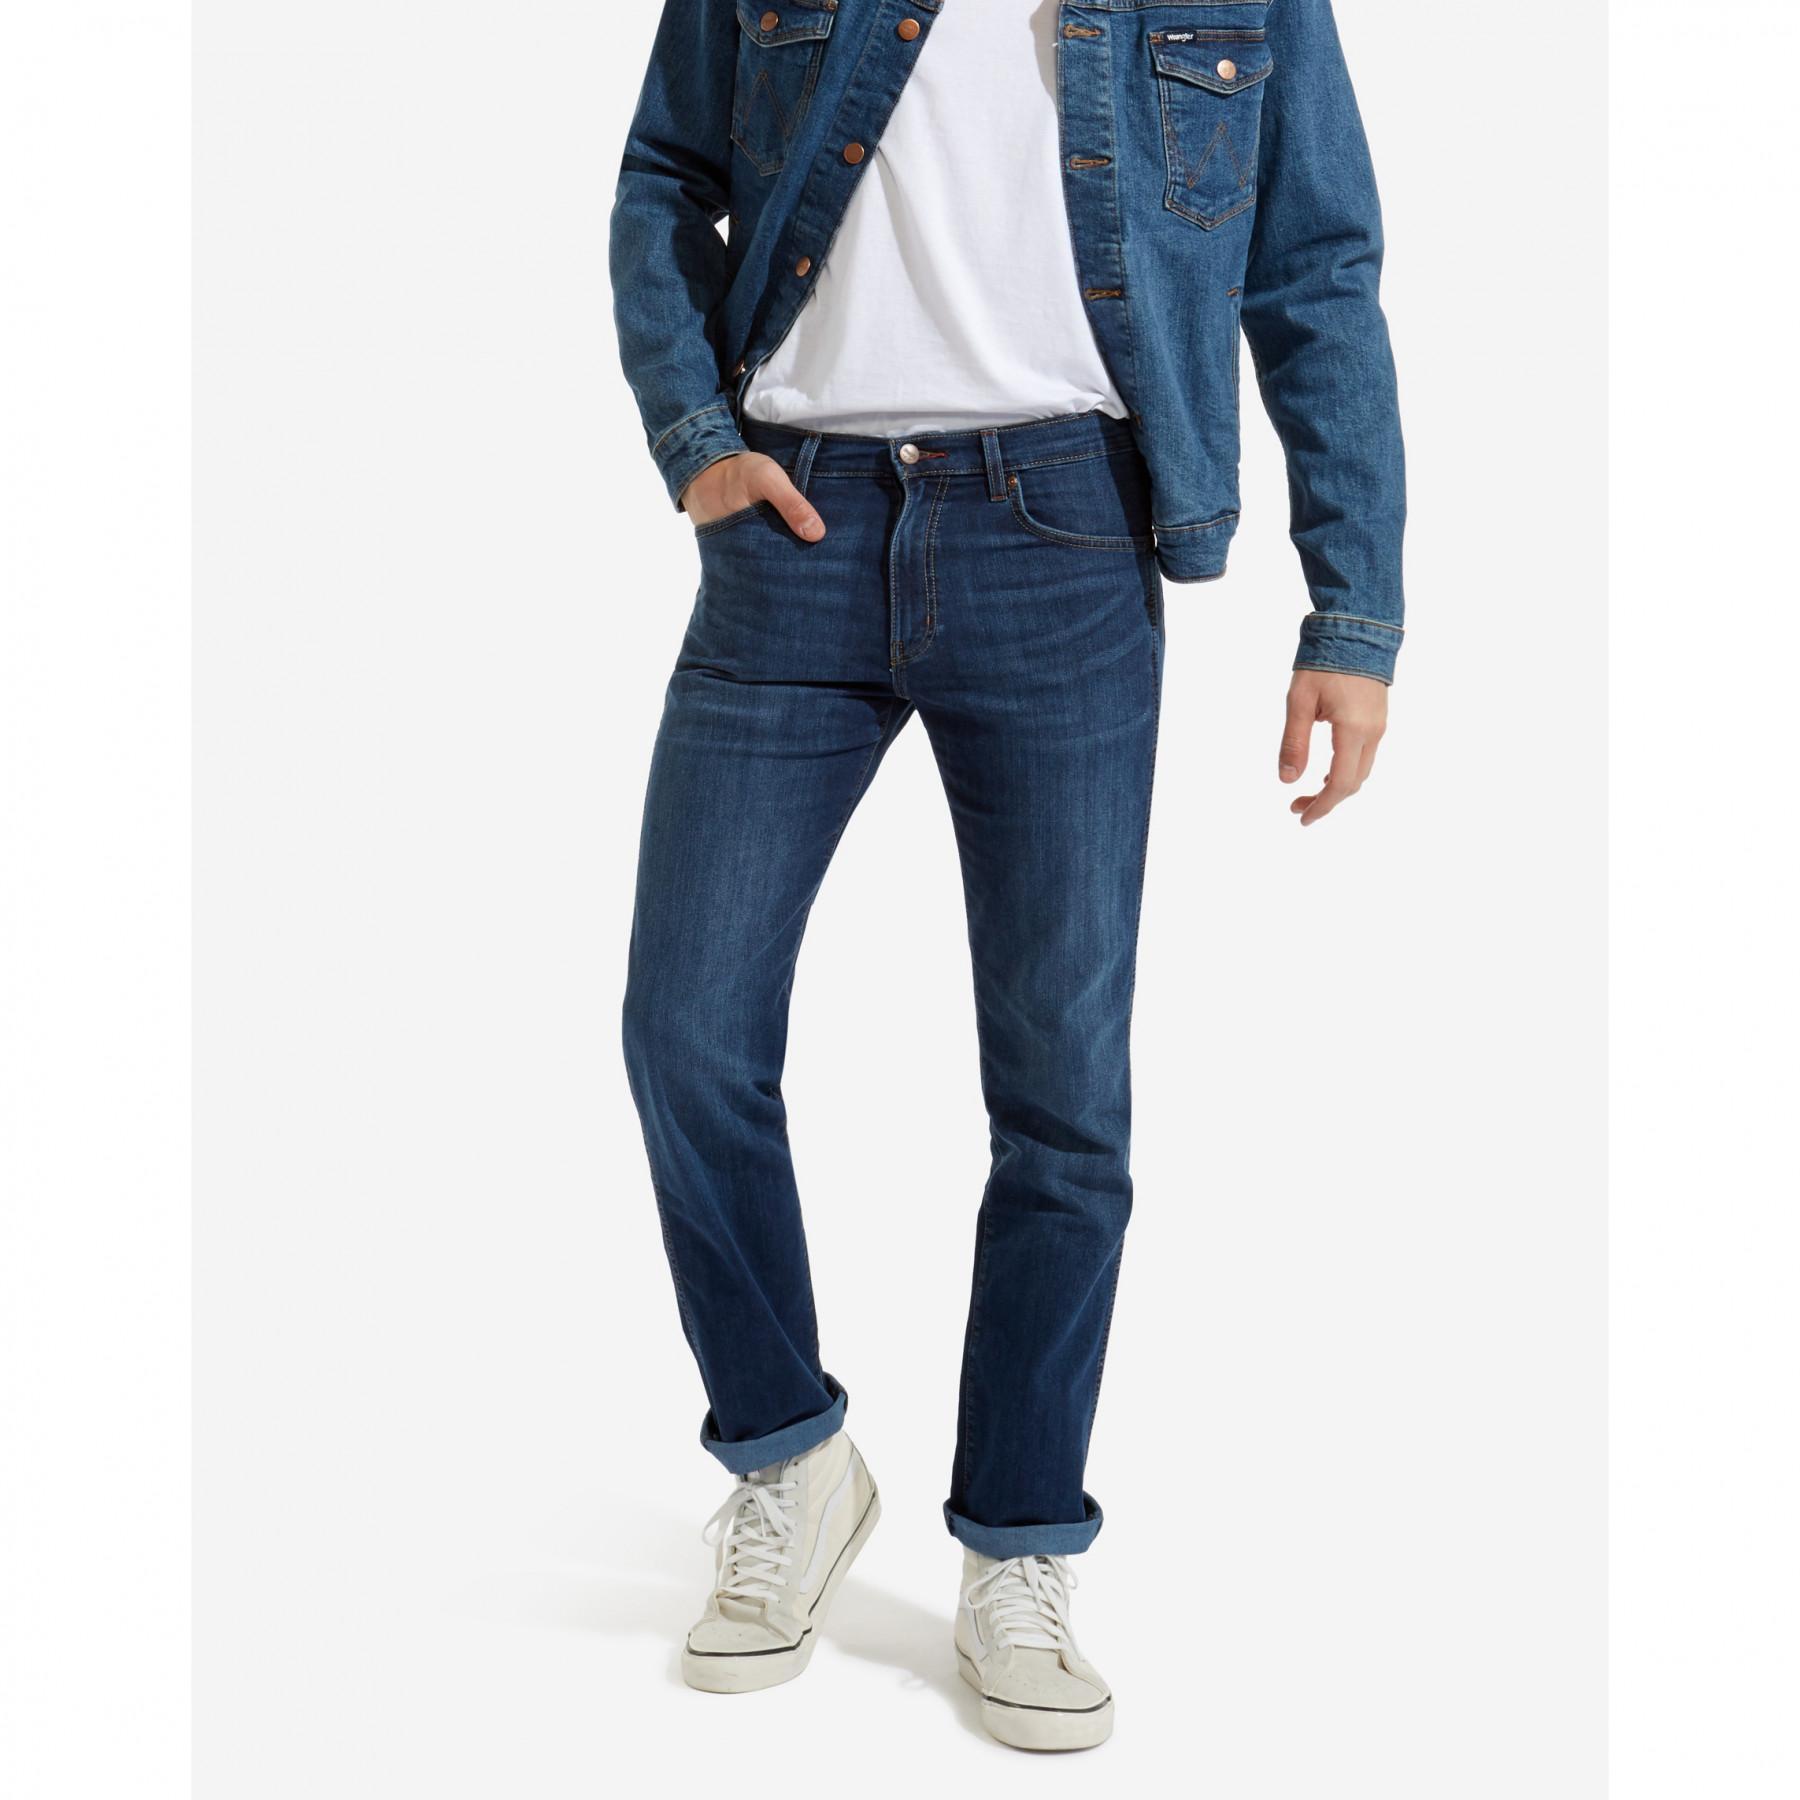 Jeans Wrangler arizona stretch